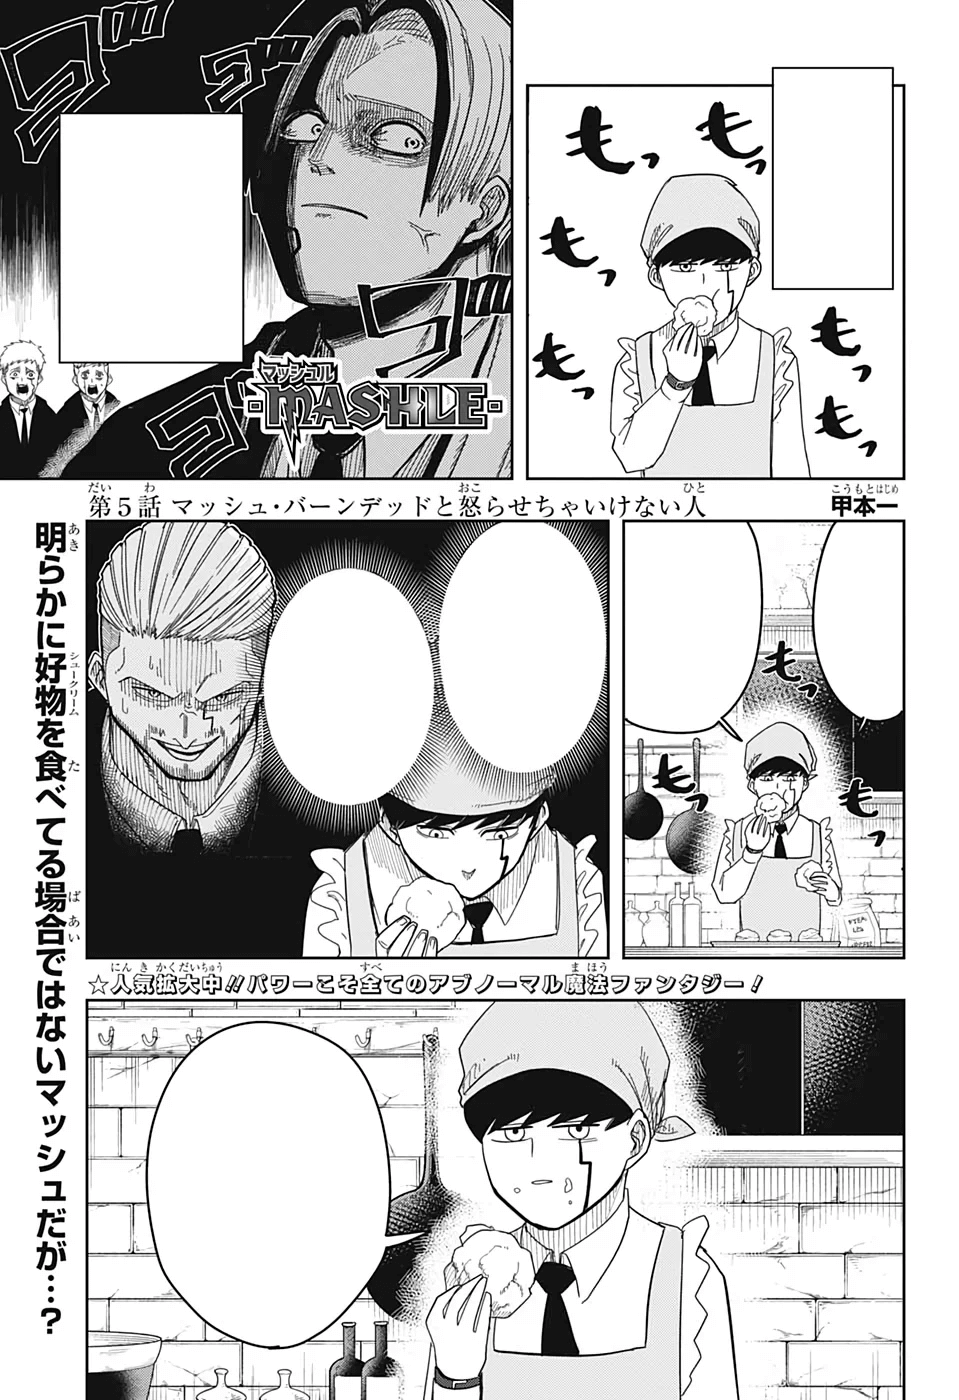 Mashle Capítulo 69 - Manga Online